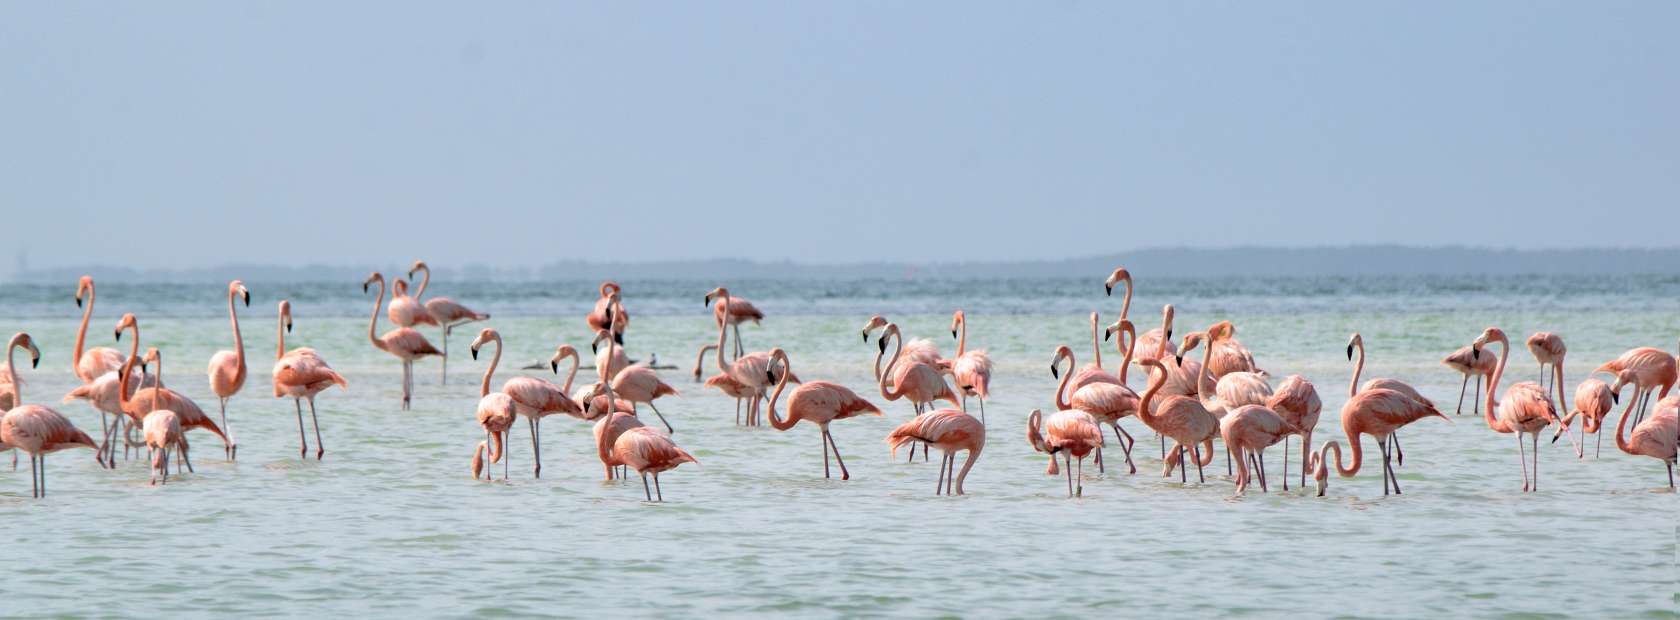 Flamingos en el mar 2